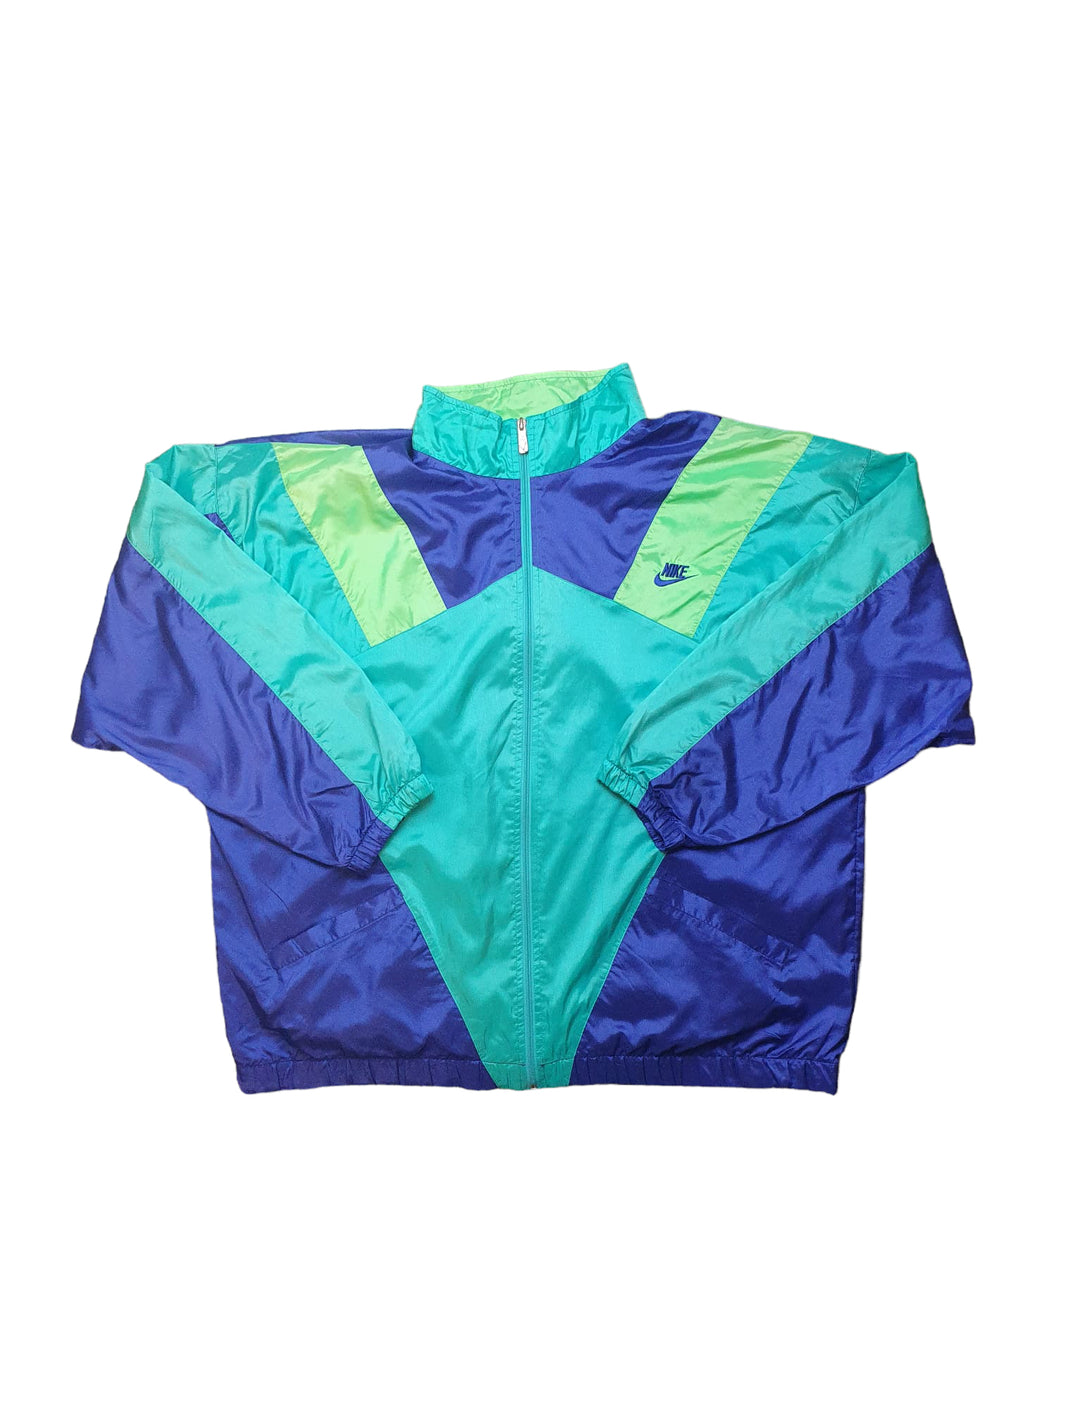 Nike Track Jacket 90s